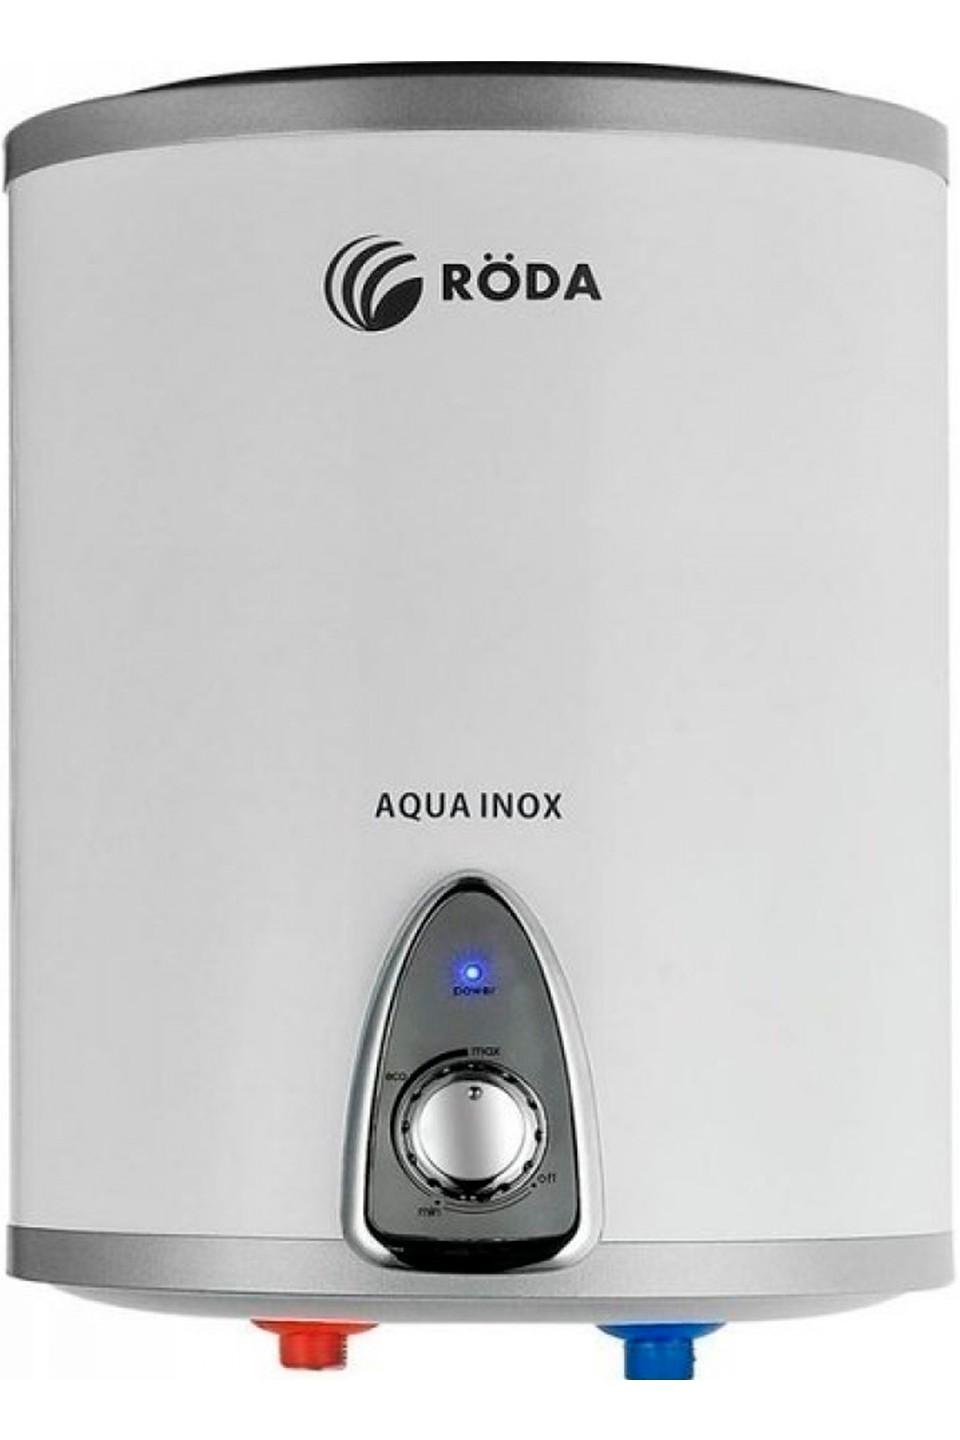 Отзывы бойлер roda на 15 литров Roda Aqua Inox 15 V в Украине